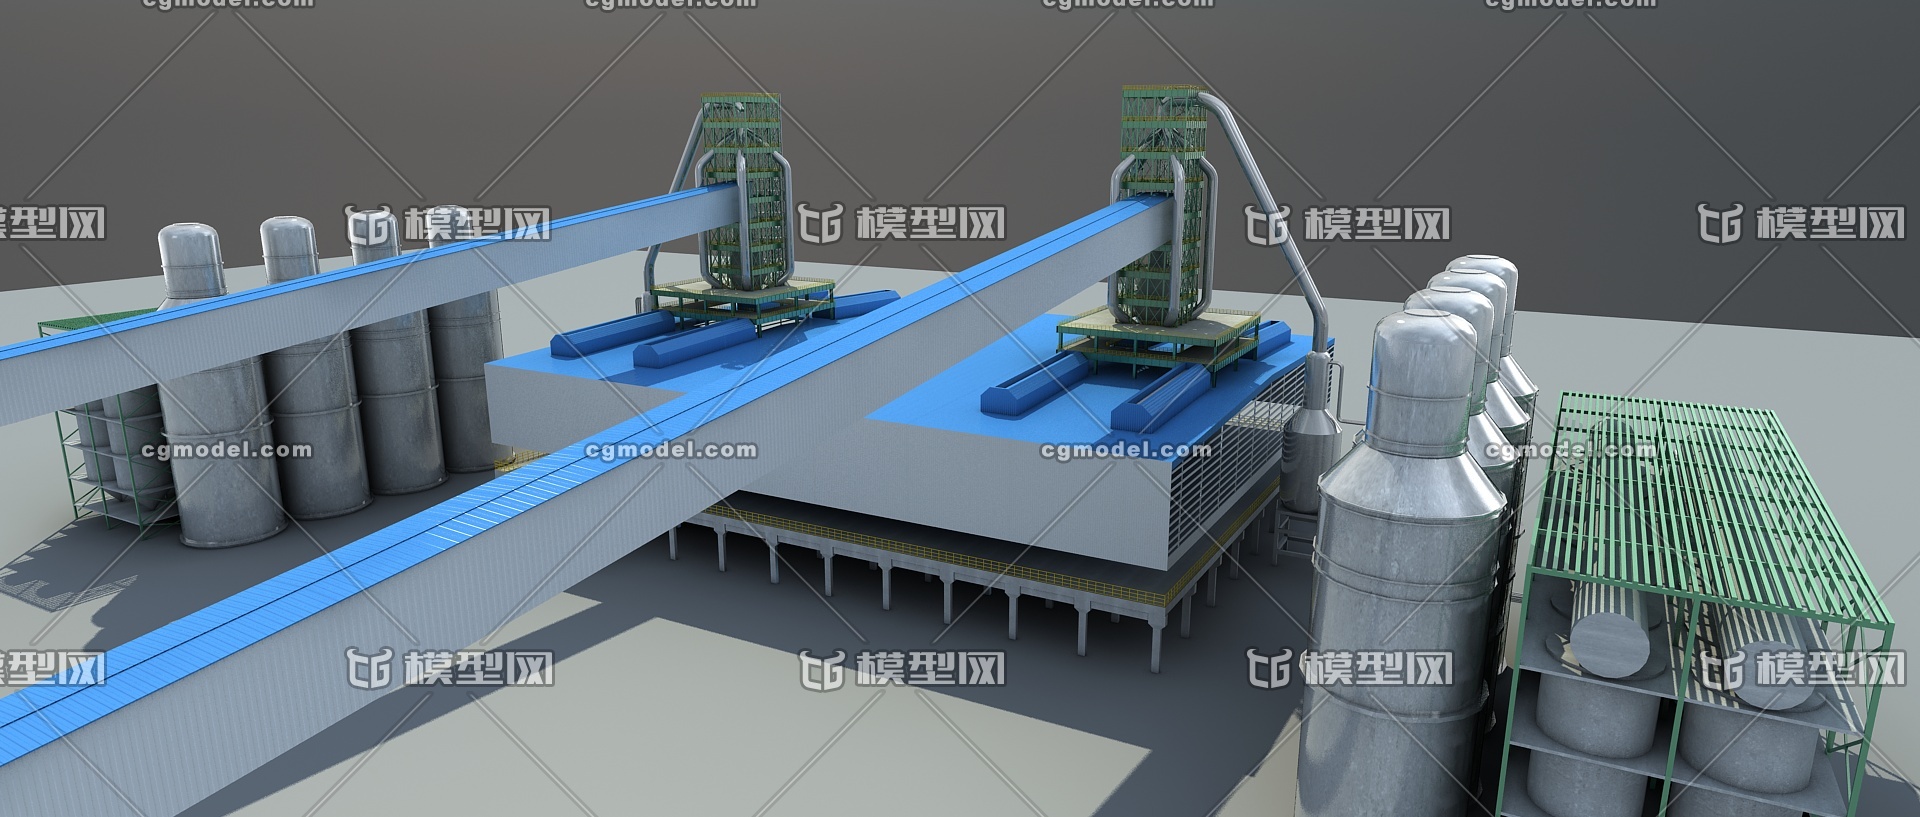 炼钢厂高炉模型_gghongchuan作品_机械/器械工业设备